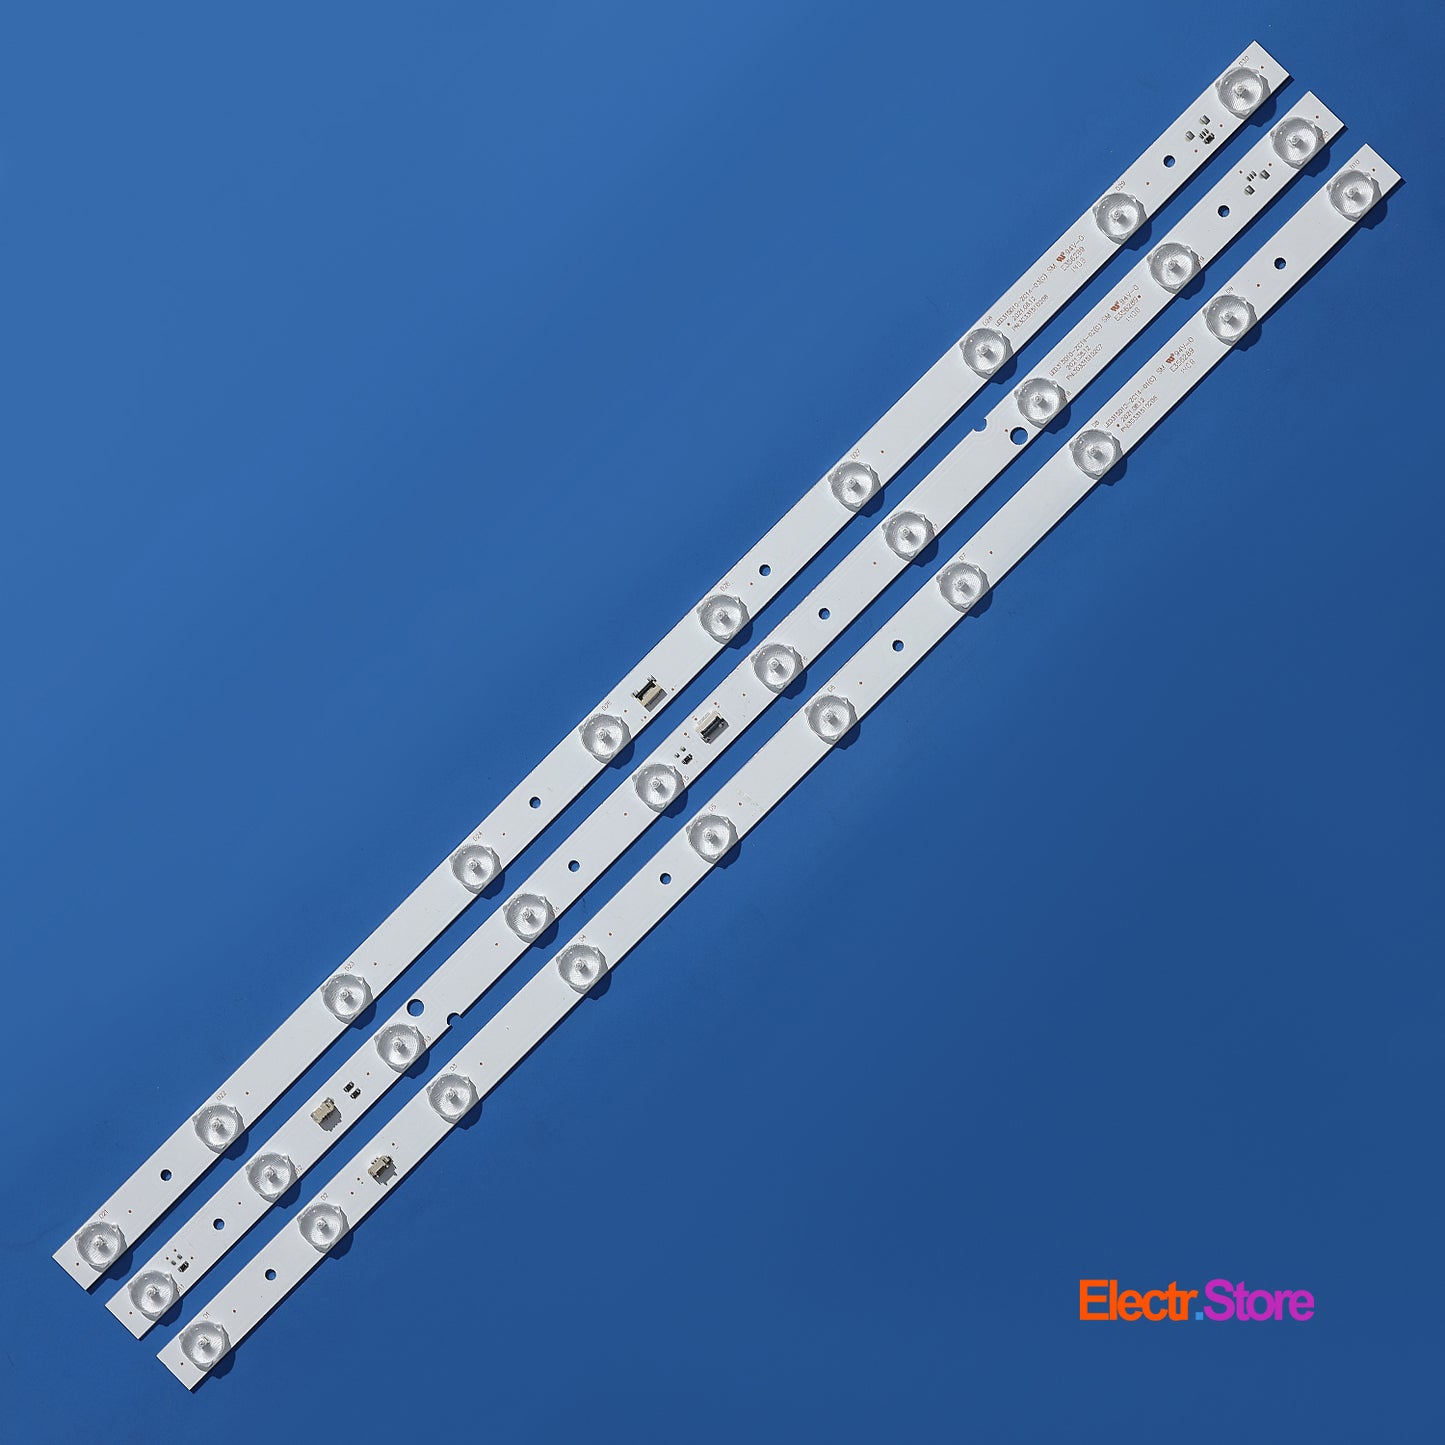 LED Backlight Strip Kits, 30331510211, LED315D10-ZC14-01(C), LED315D10-ZC14-01(D) (3 pcs/kit), for TV 32" 32" Haier JVC LED Backlights LED315D10-ZC14-01(C) Electr.Store